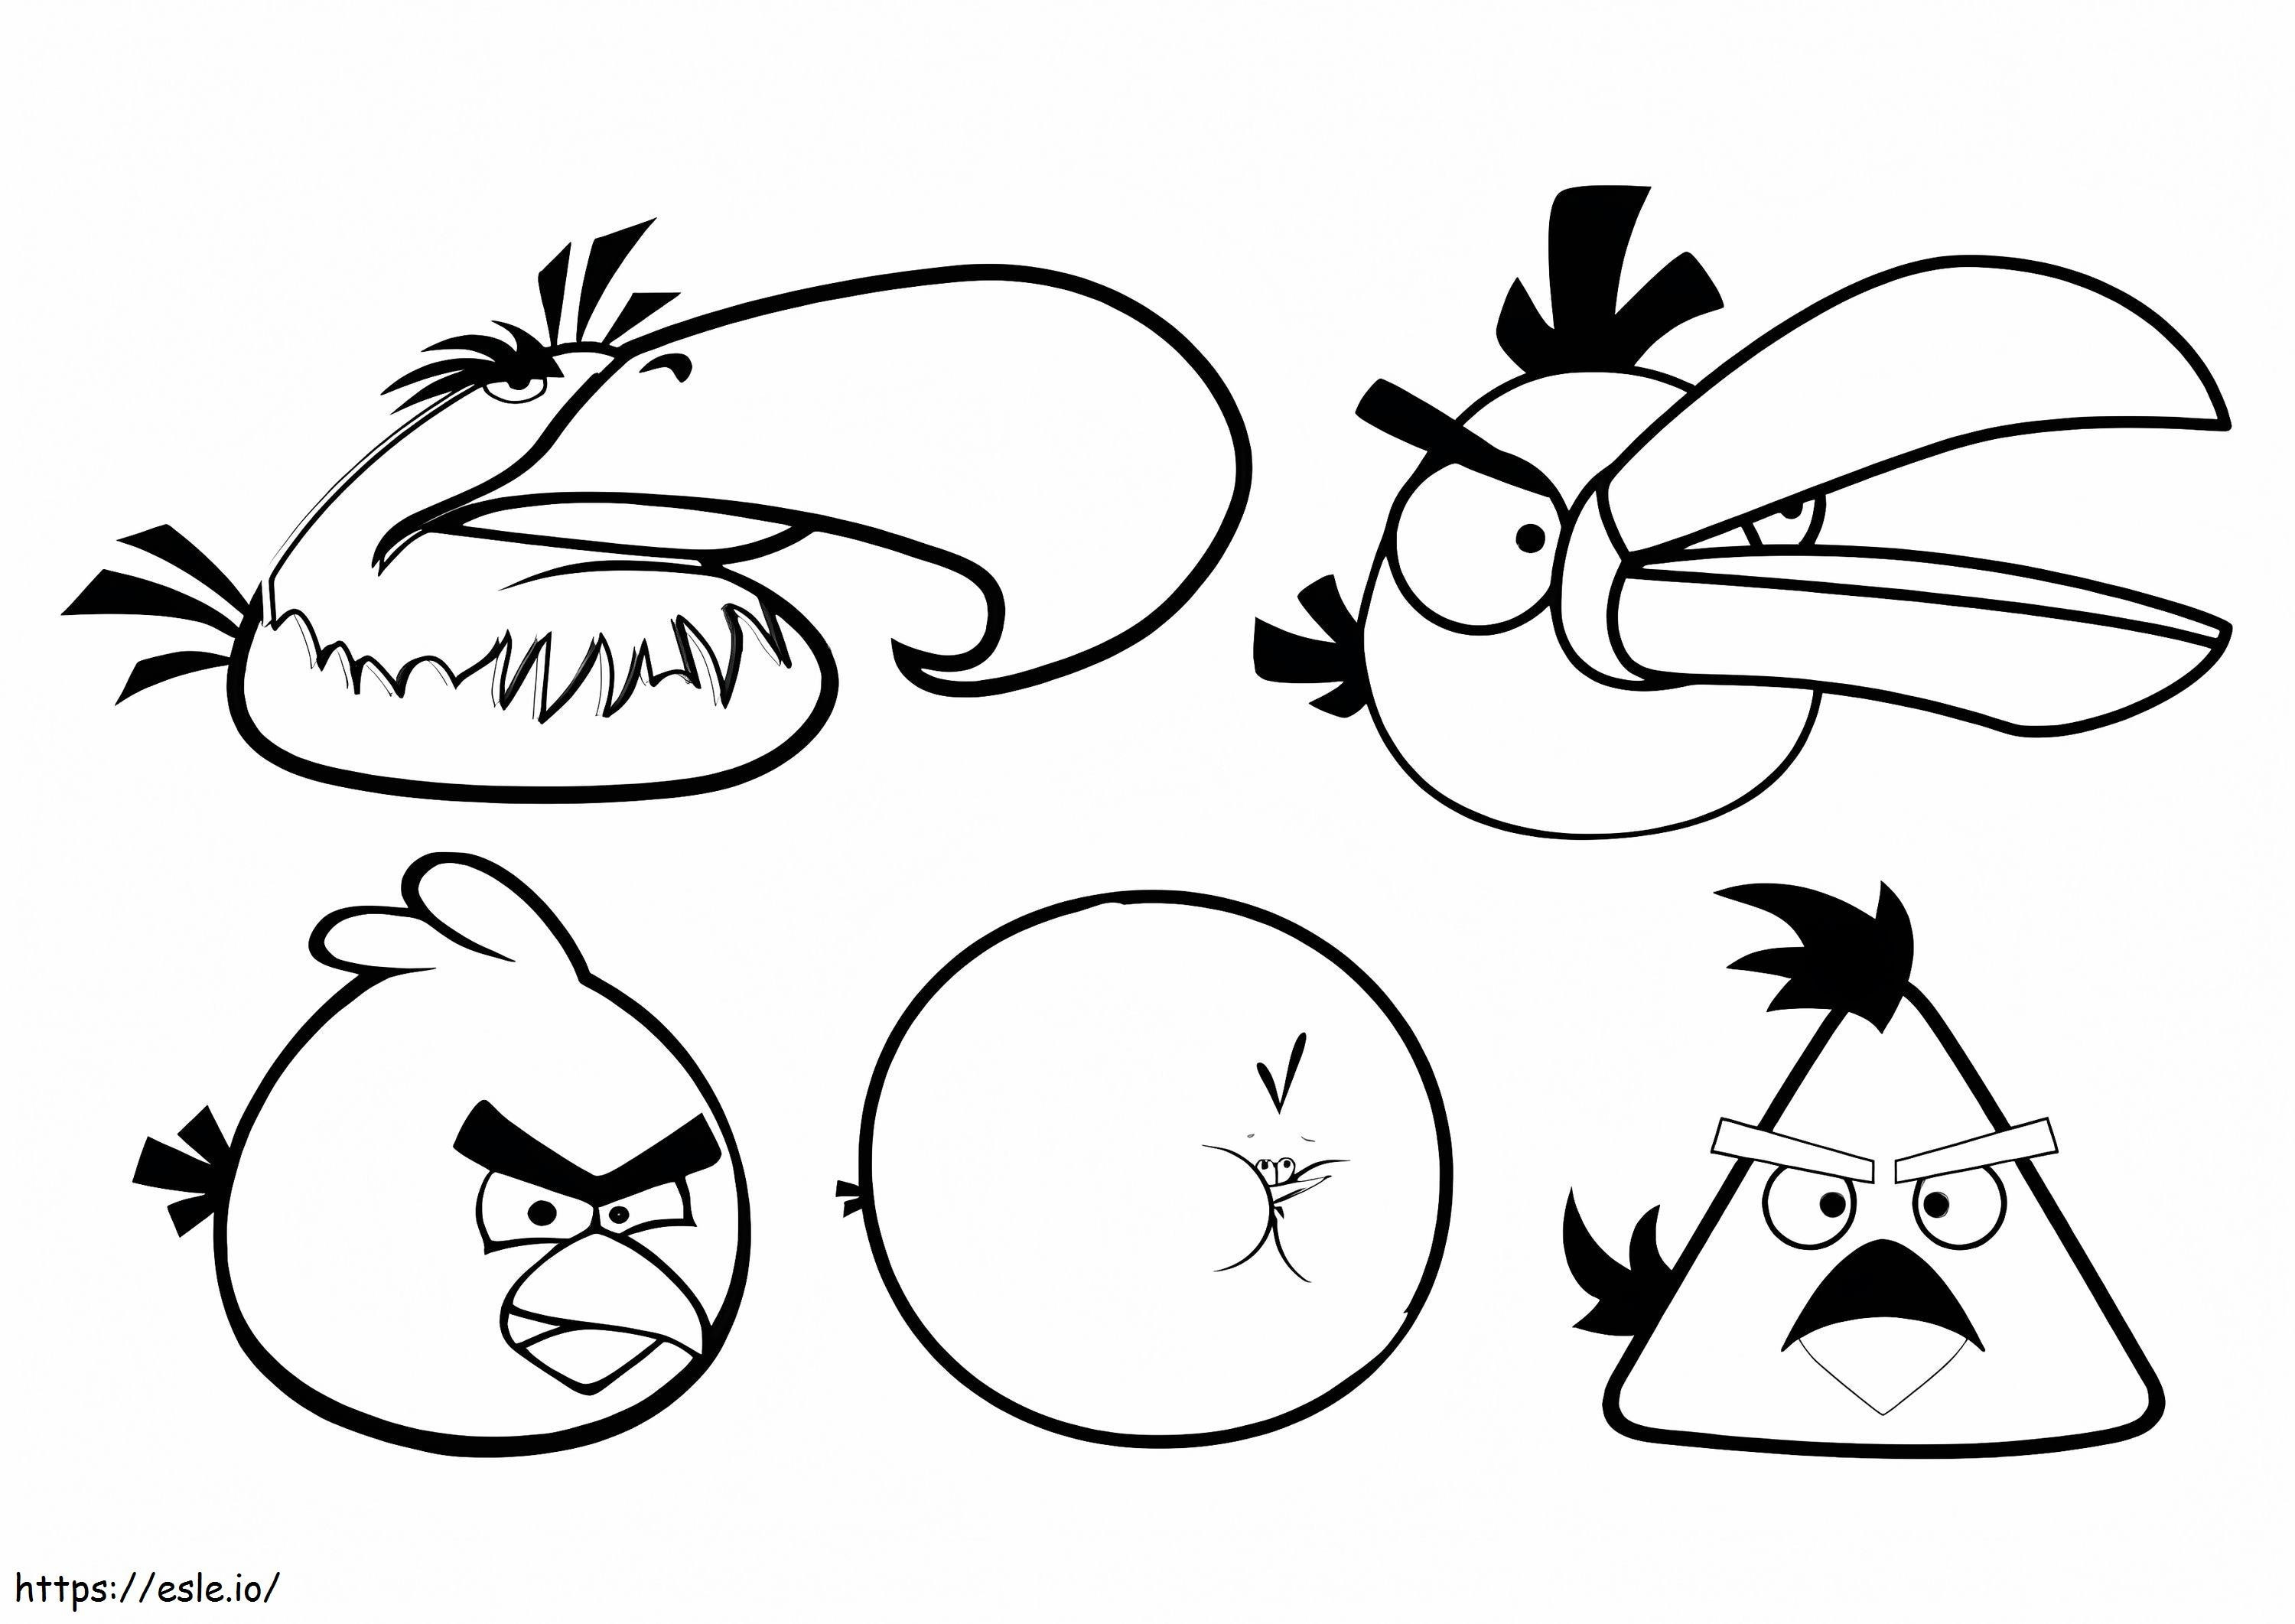 Fünf Vögel von Angry Birds ausmalbilder